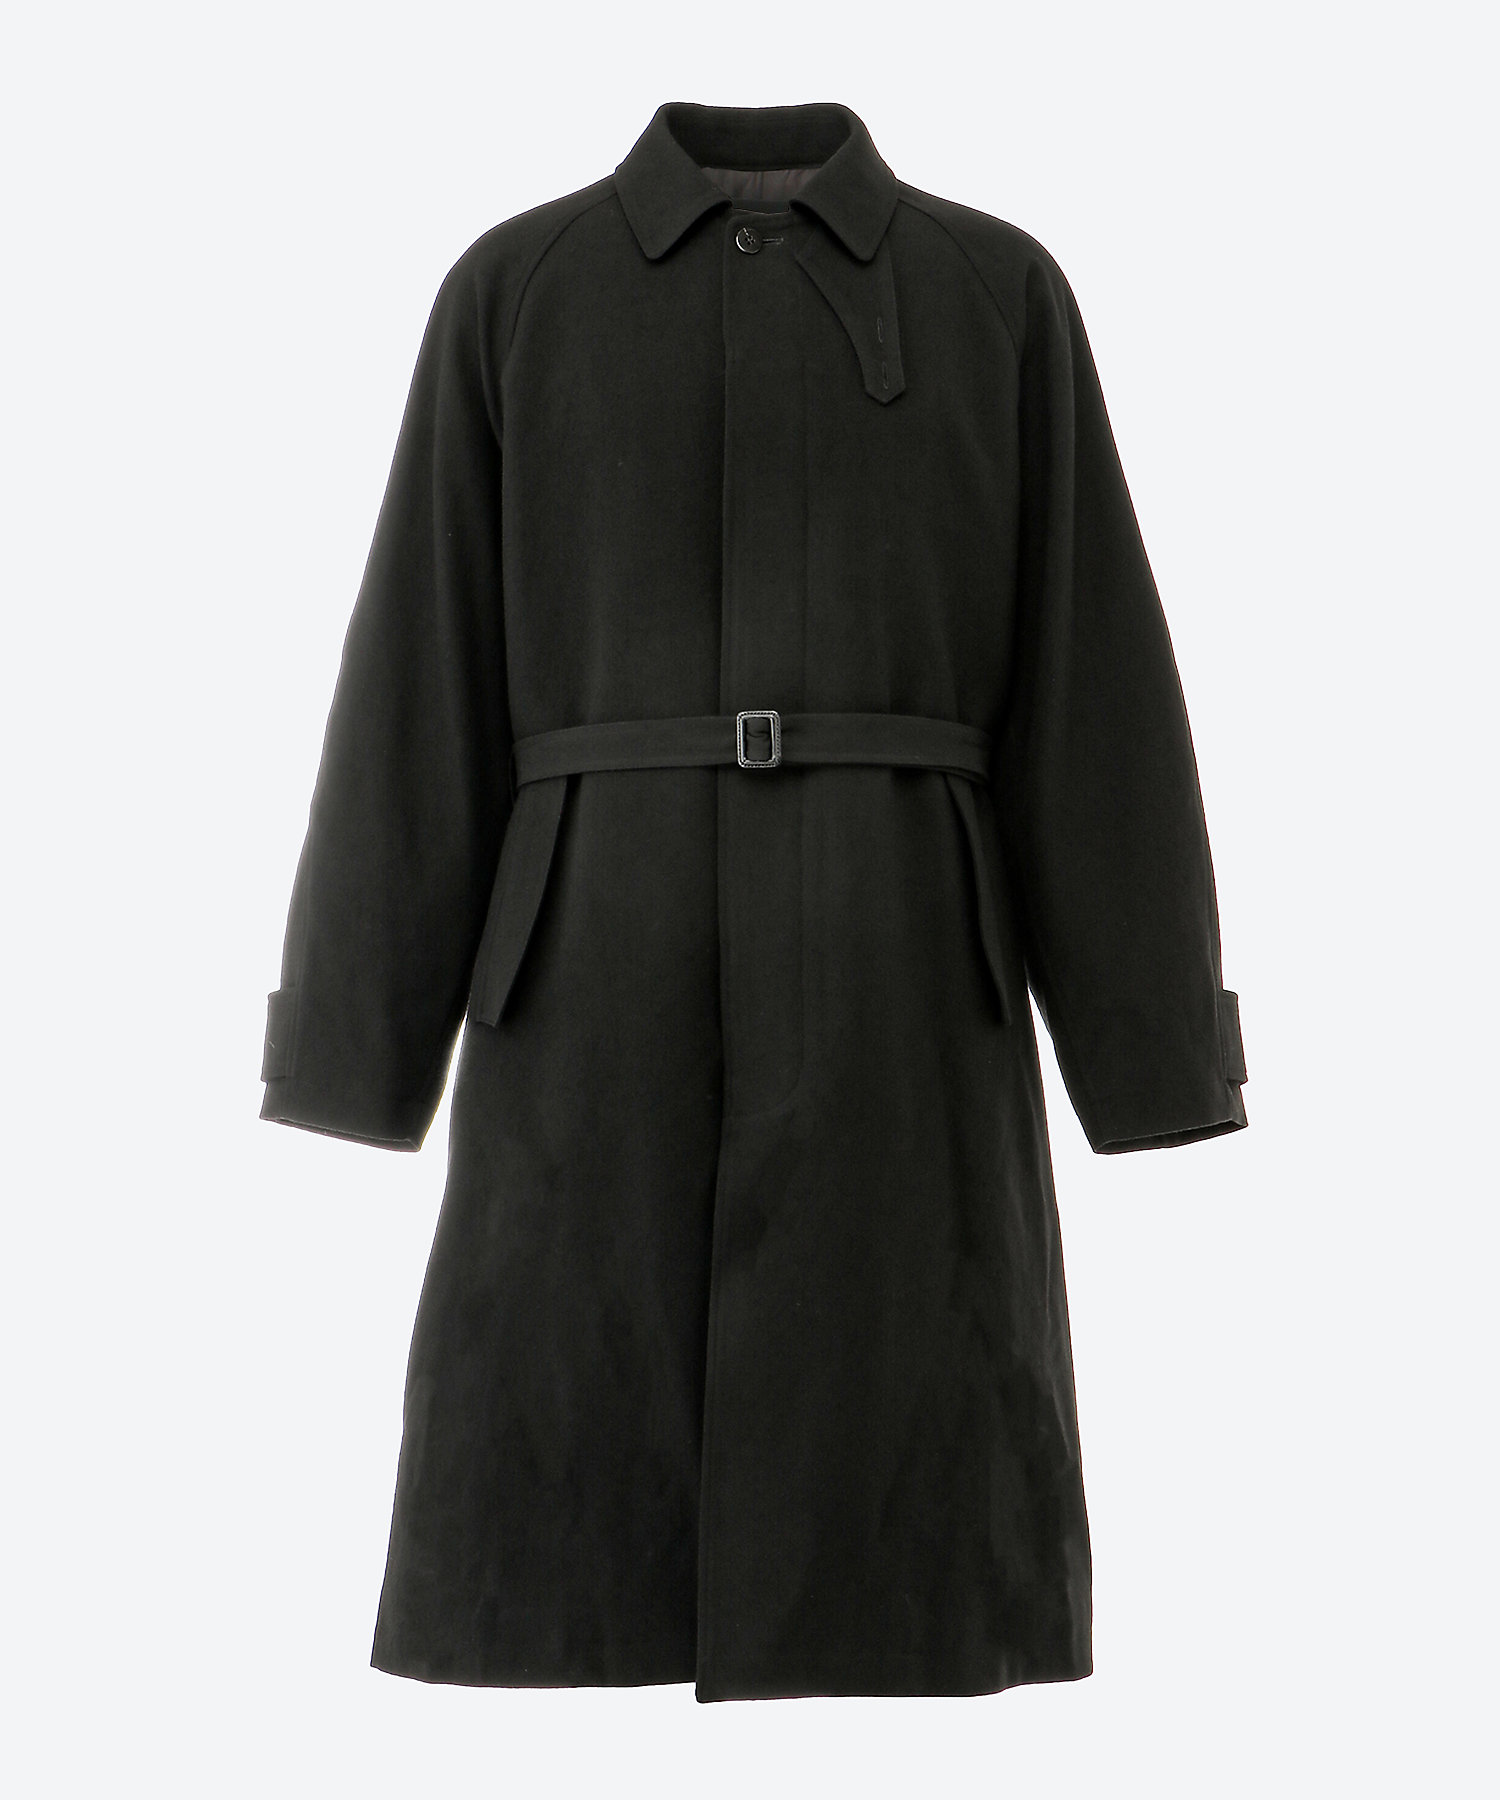 SEEK stain collar coat ステンカラーコート musashi